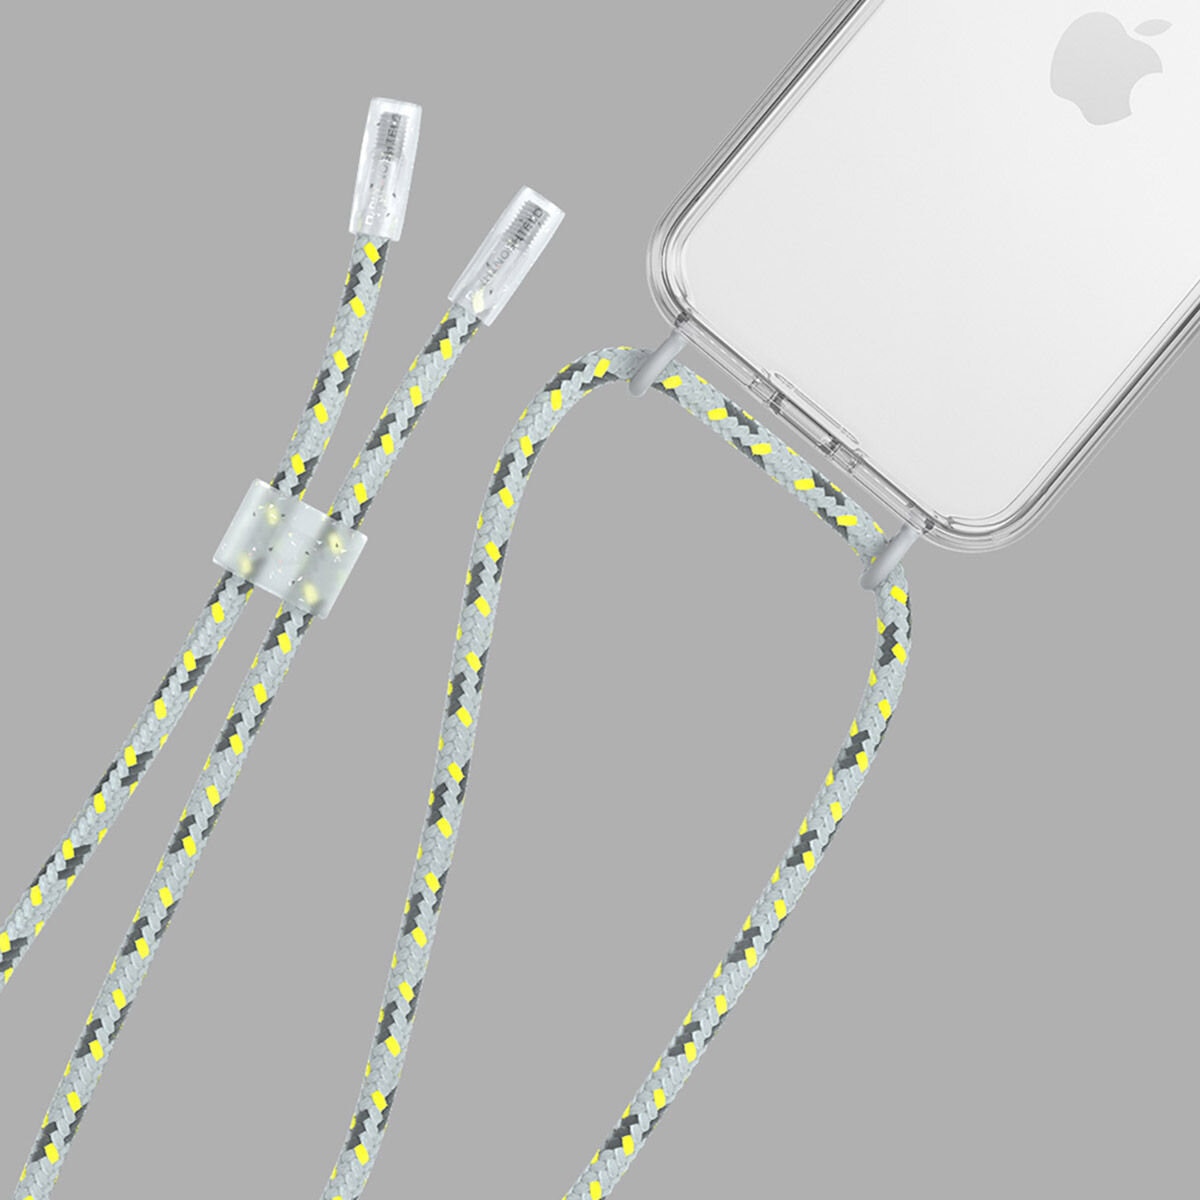 犀牛盾 iPhone 14 Clear 透明防摔手機殼 + 9H 3D滿版螢幕玻璃保護貼 + 手機掛繩 曙光灰